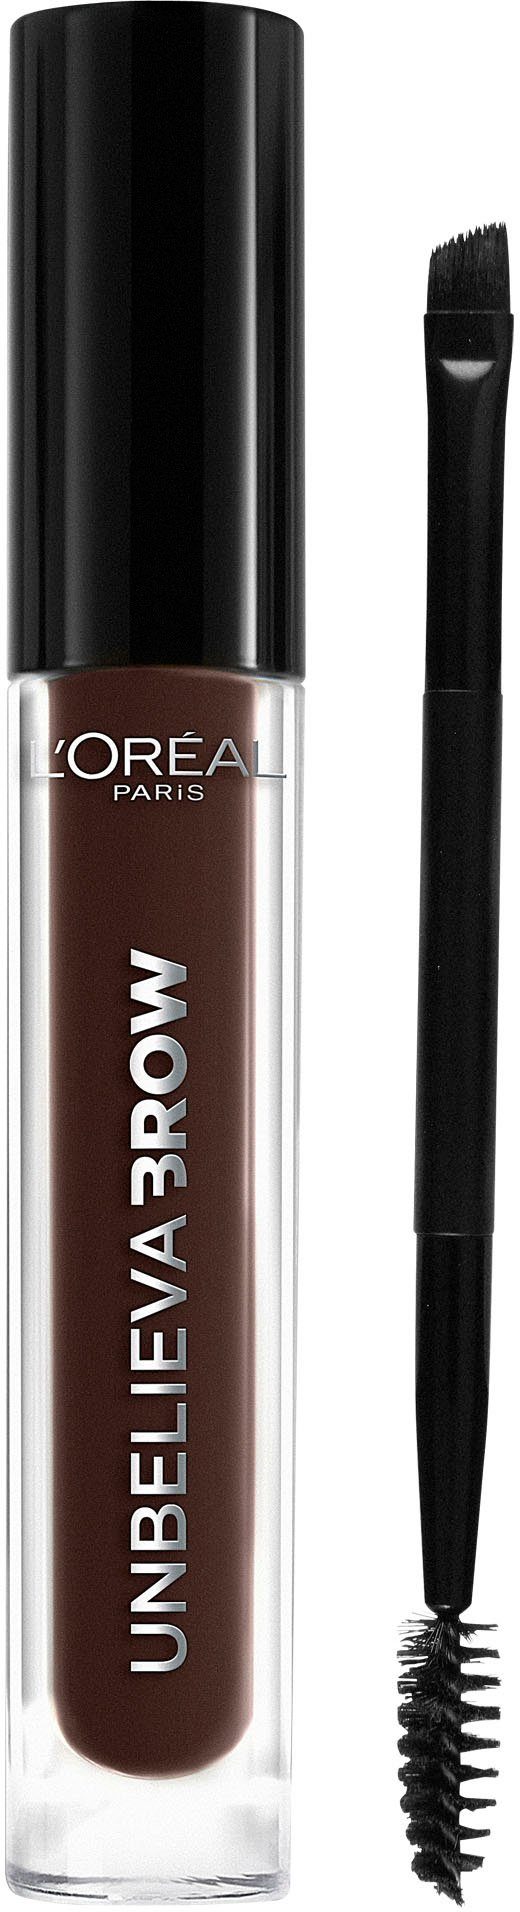 L'ORÉAL PARIS Augenbrauen-Gel Unbelieva Brow, mit unterschiedlichen Applikatoren, wischfest, Augen-Make-Up 109 Ebony